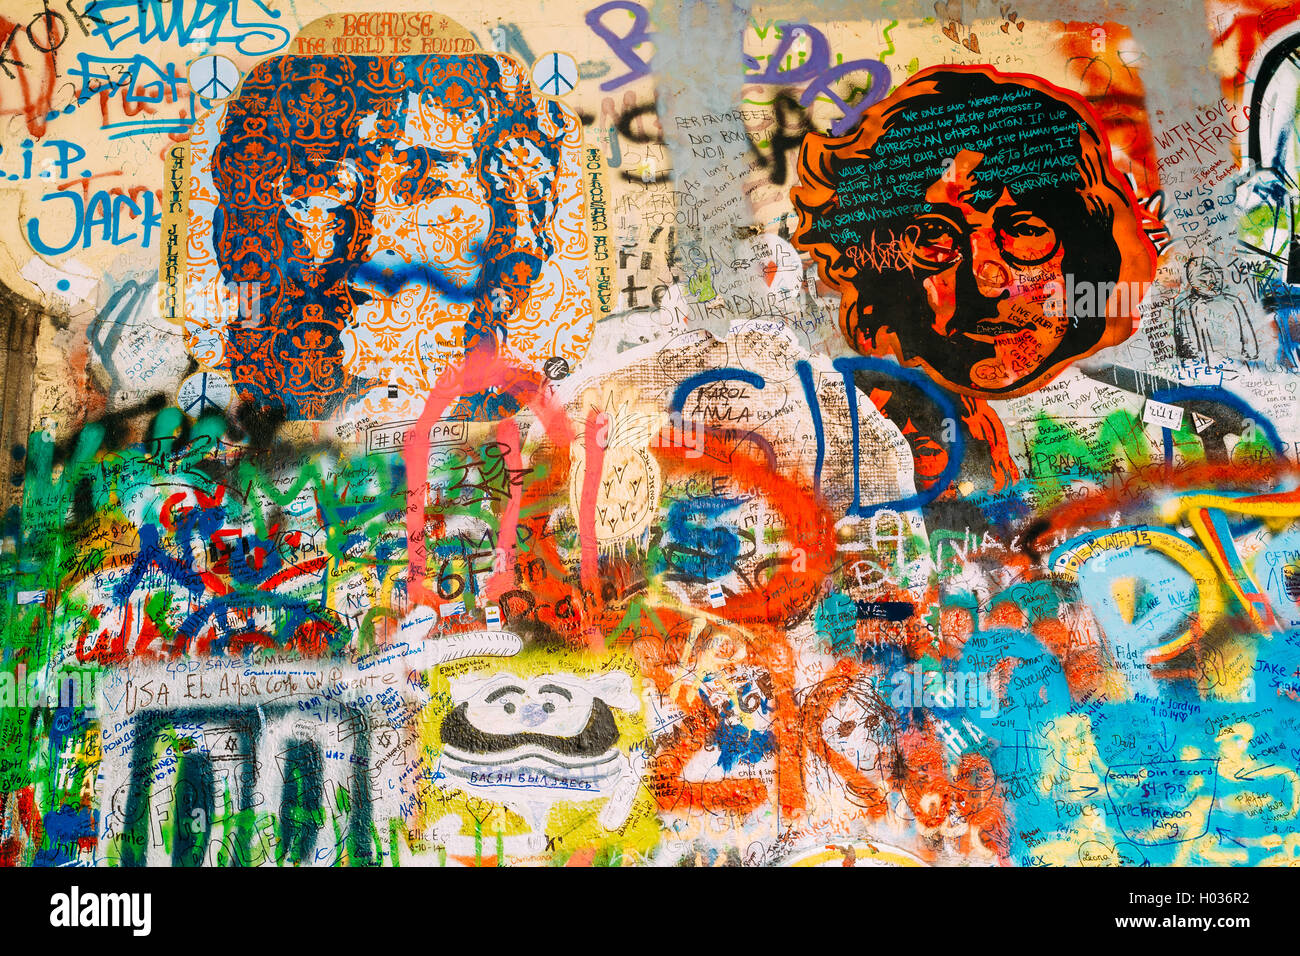 Praga, República Checa - Octubre 10, 2014: el famoso lugar en Praga - El muro de John Lennon. Muro está lleno de John Lennon inspir Foto de stock